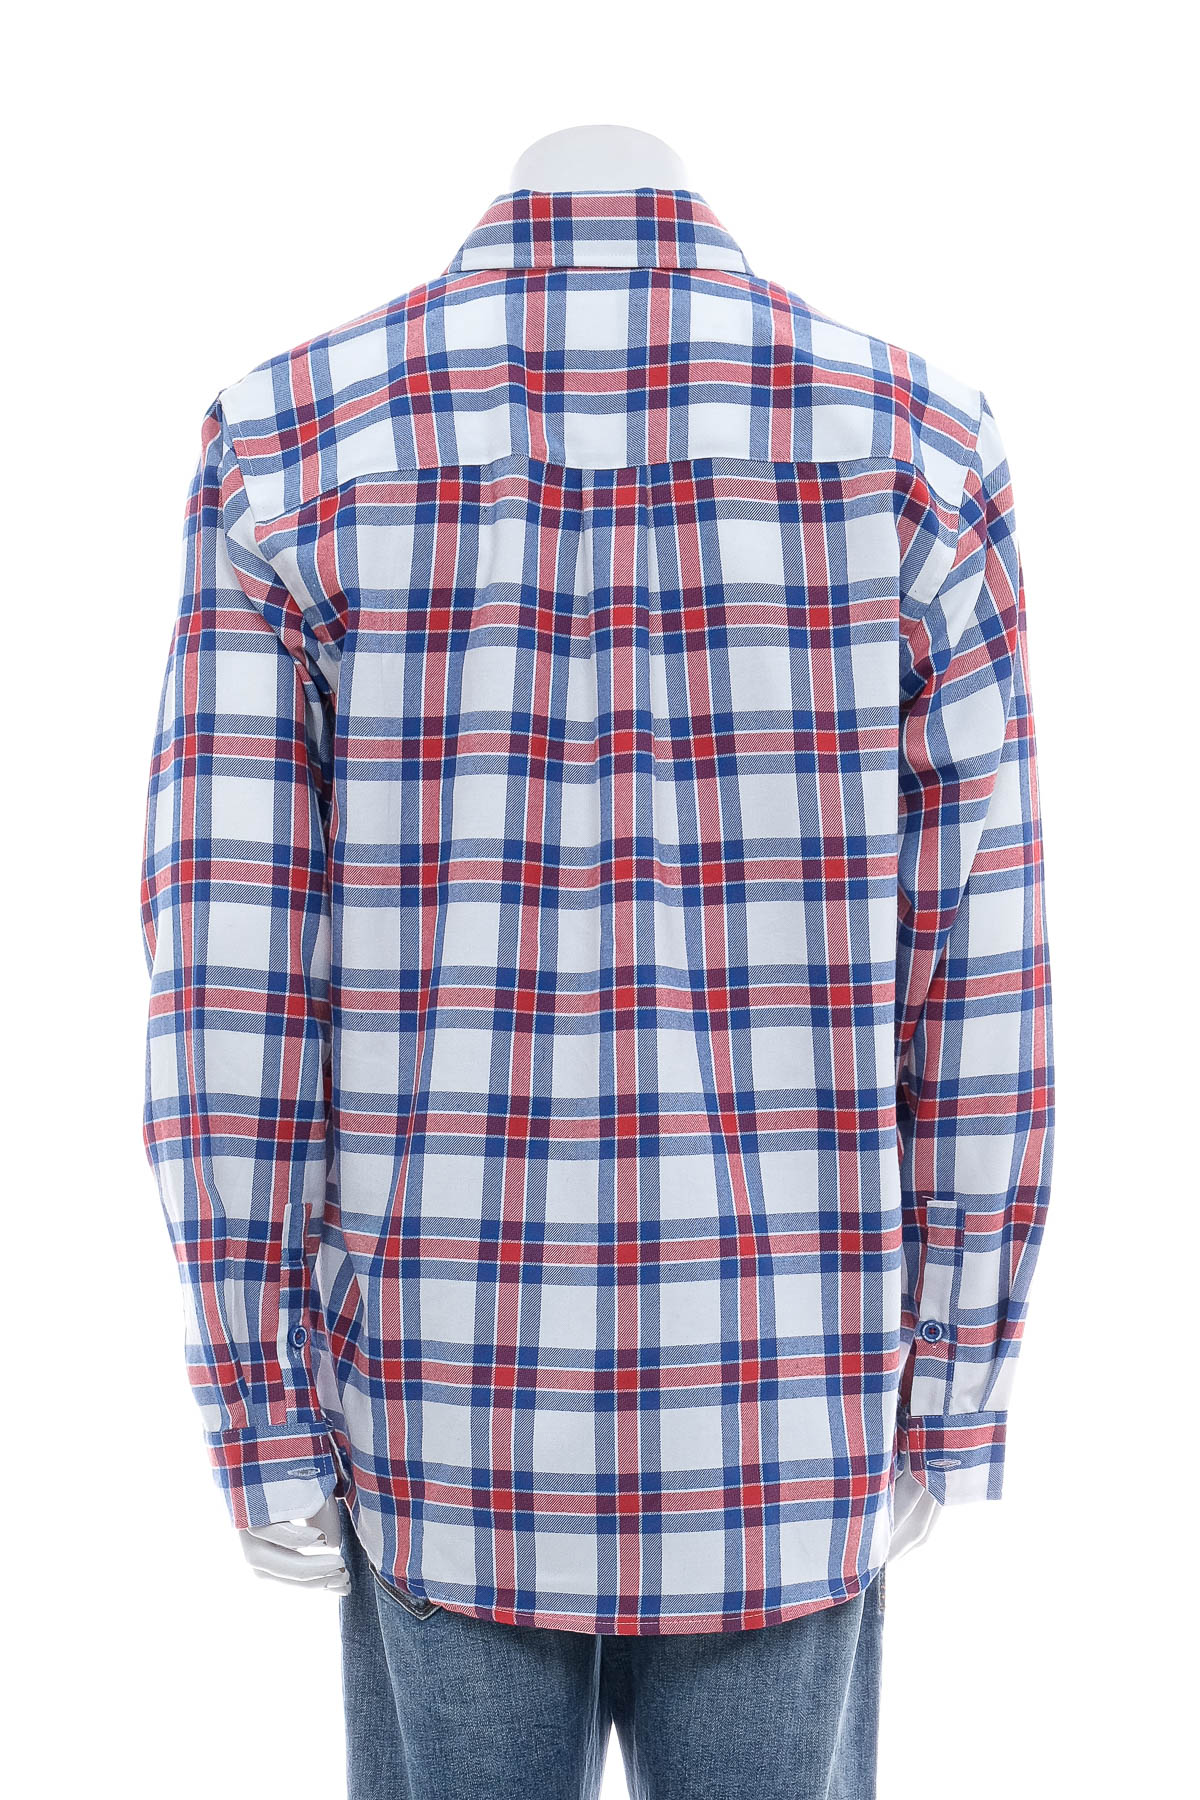 Ανδρικό πουκάμισο - Dixxon Flannel Co. - 1